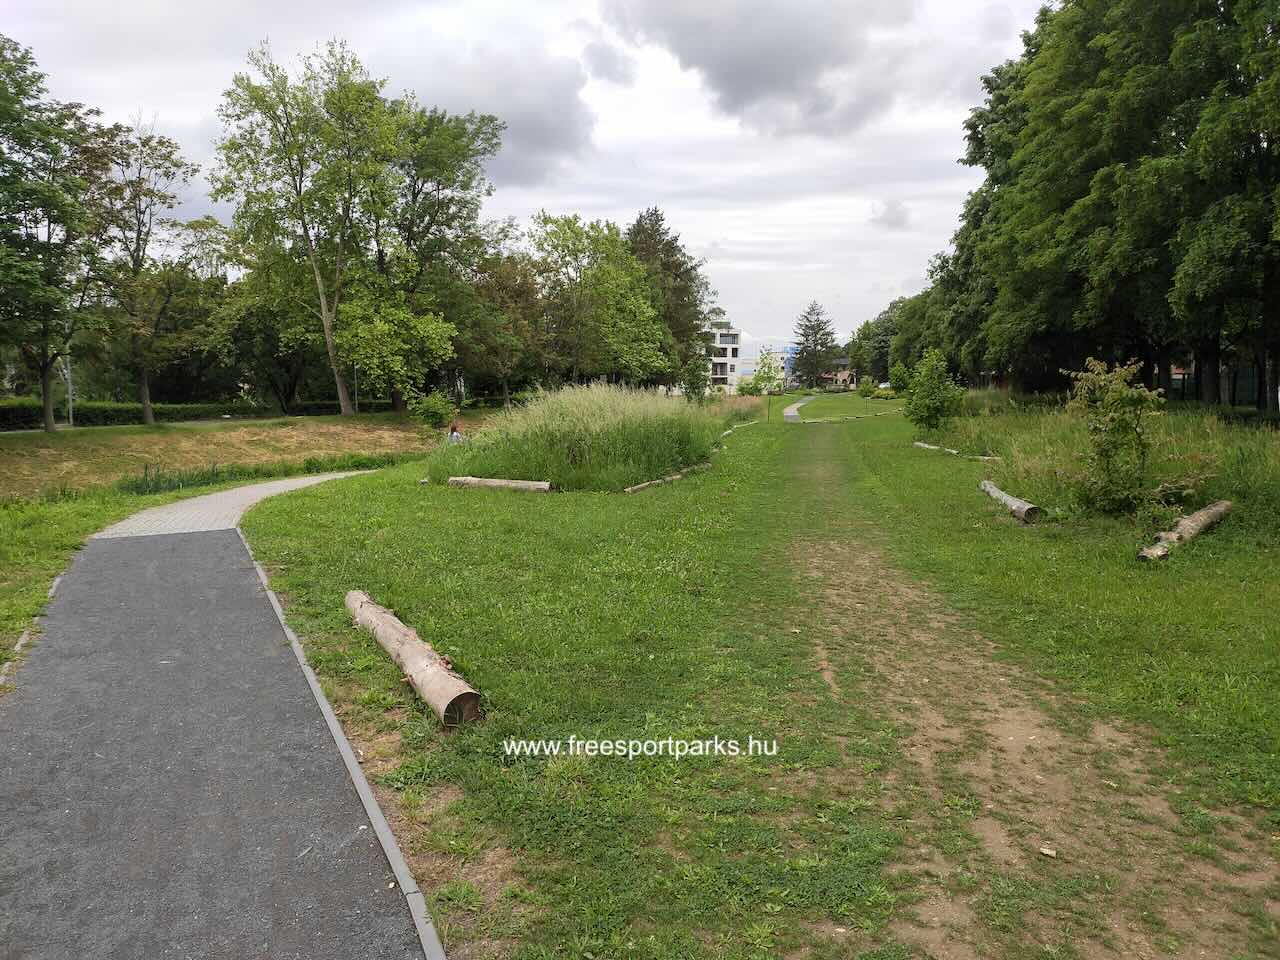 Futóút rönkökkel jelölve a vizes pihenőhely sétánya mellett, Sportliget Szombathely - Free Sport Parks Blog